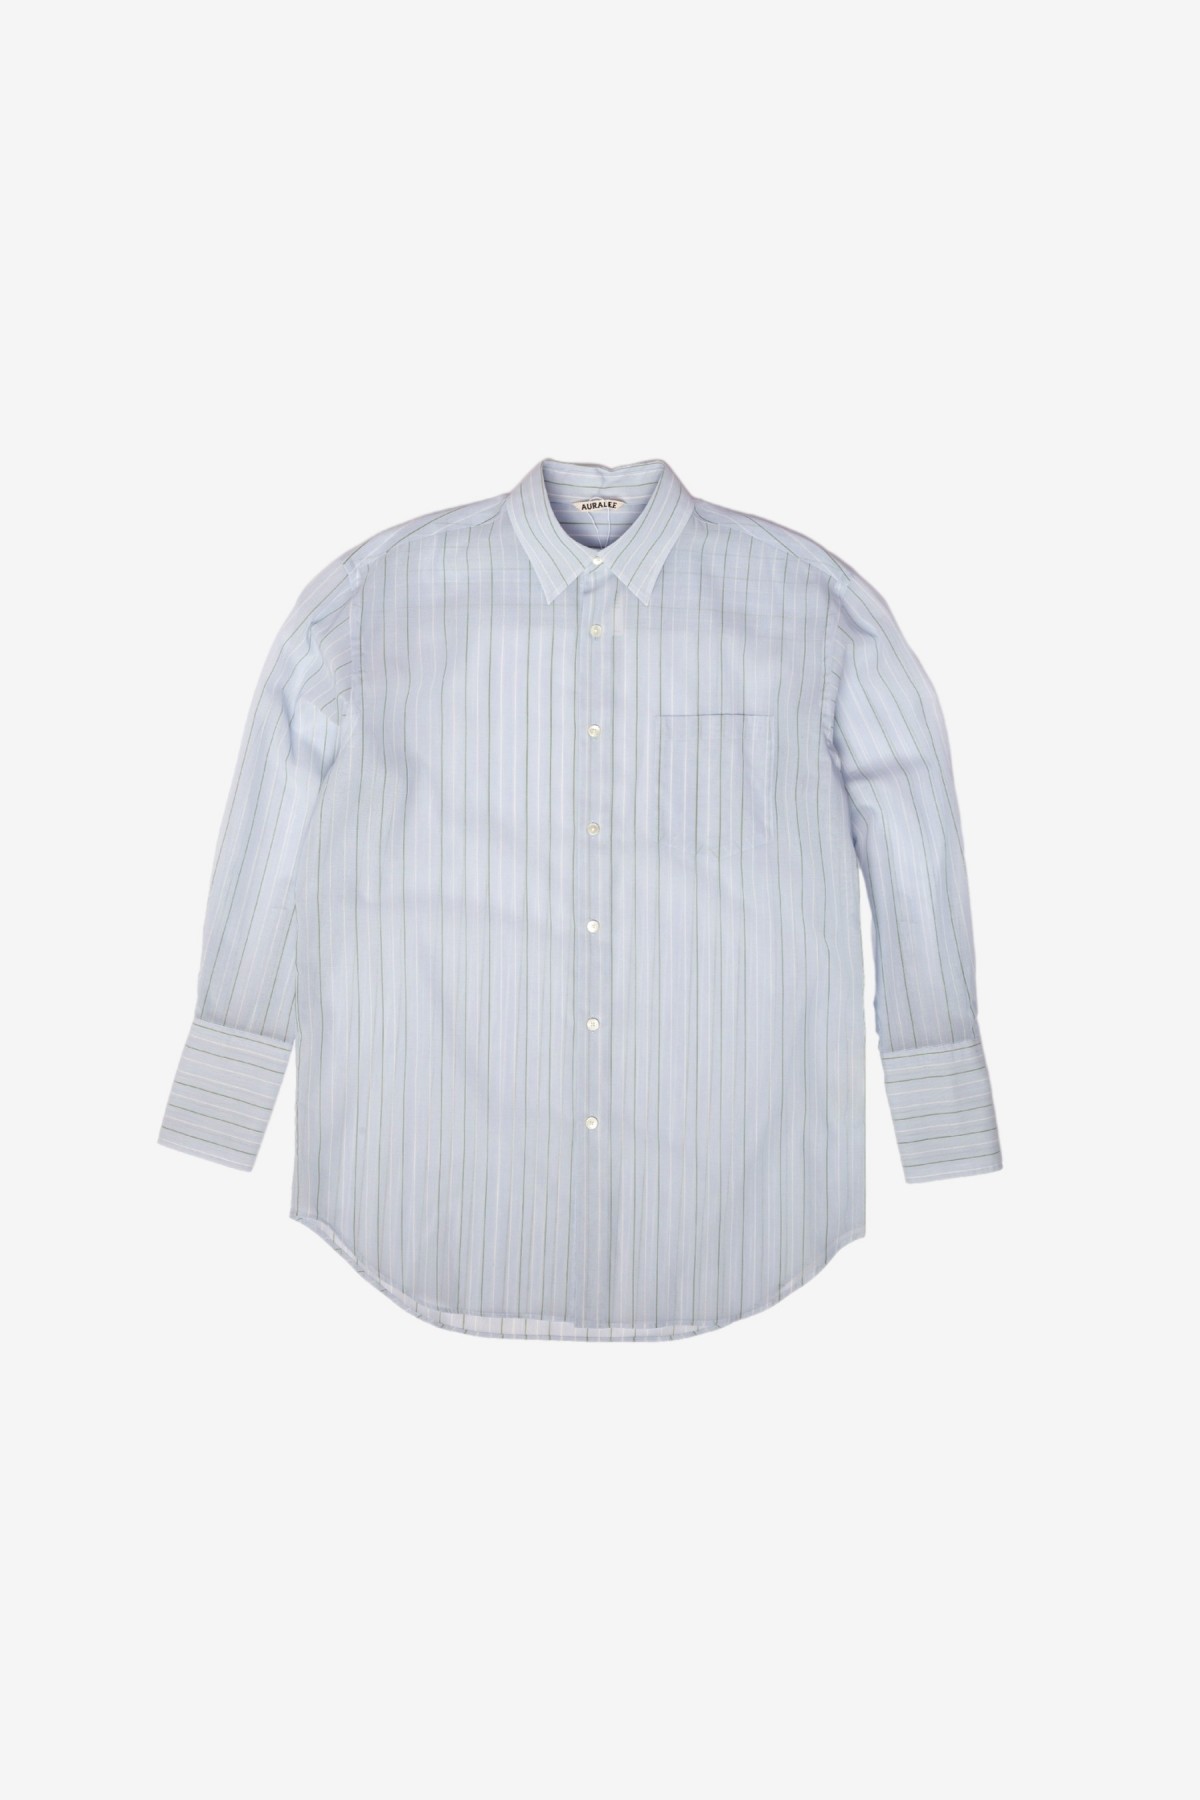 Auralee Hard Twist Finx Organza Stripe Shirt in Light Blue Stripe